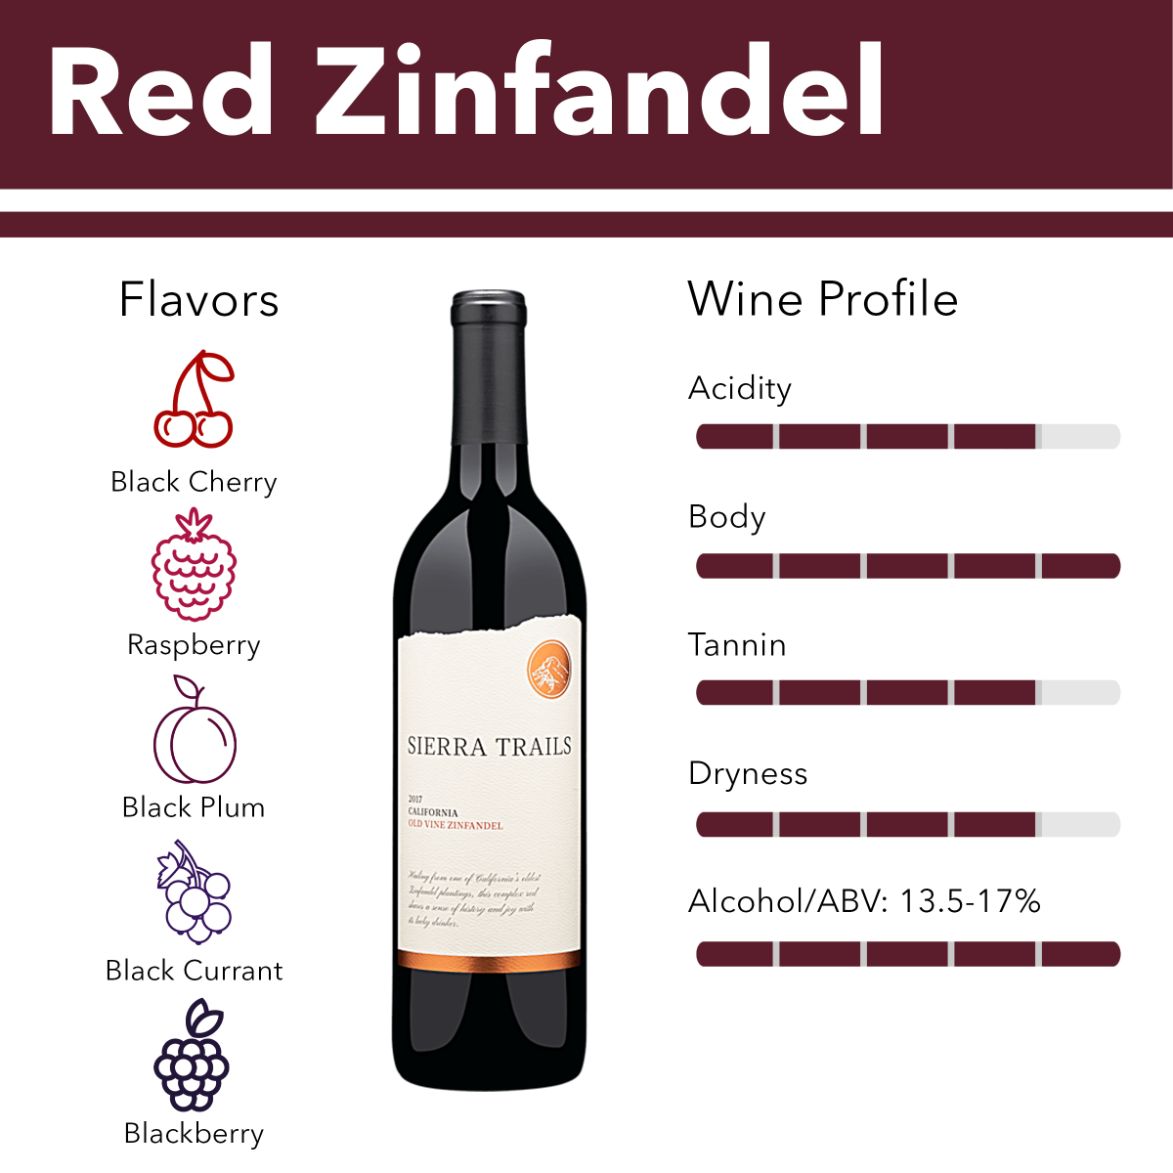 Red Zinfandel wine flavor profile.